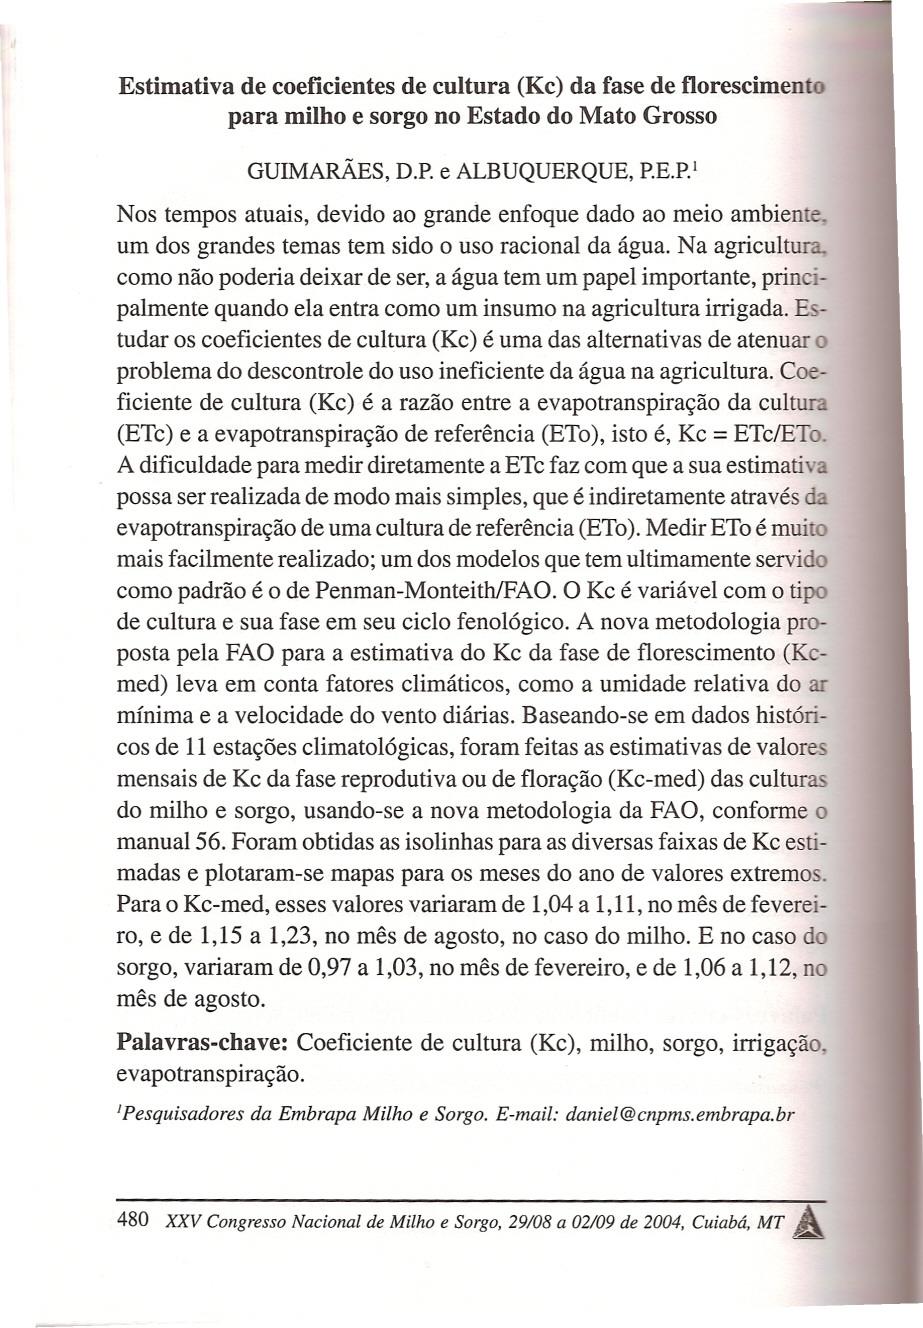 Estimativa de coeficientes de cultura (Kc) da fase de f1orescimento para milho e sorgo no Estado do Mato Grosso - 1 GUIMARAES, D.P. e ALBUQUERQUE, P.E.P. Nos tempos atuais, devido ao grande enfoque dado ao meio ambiente.